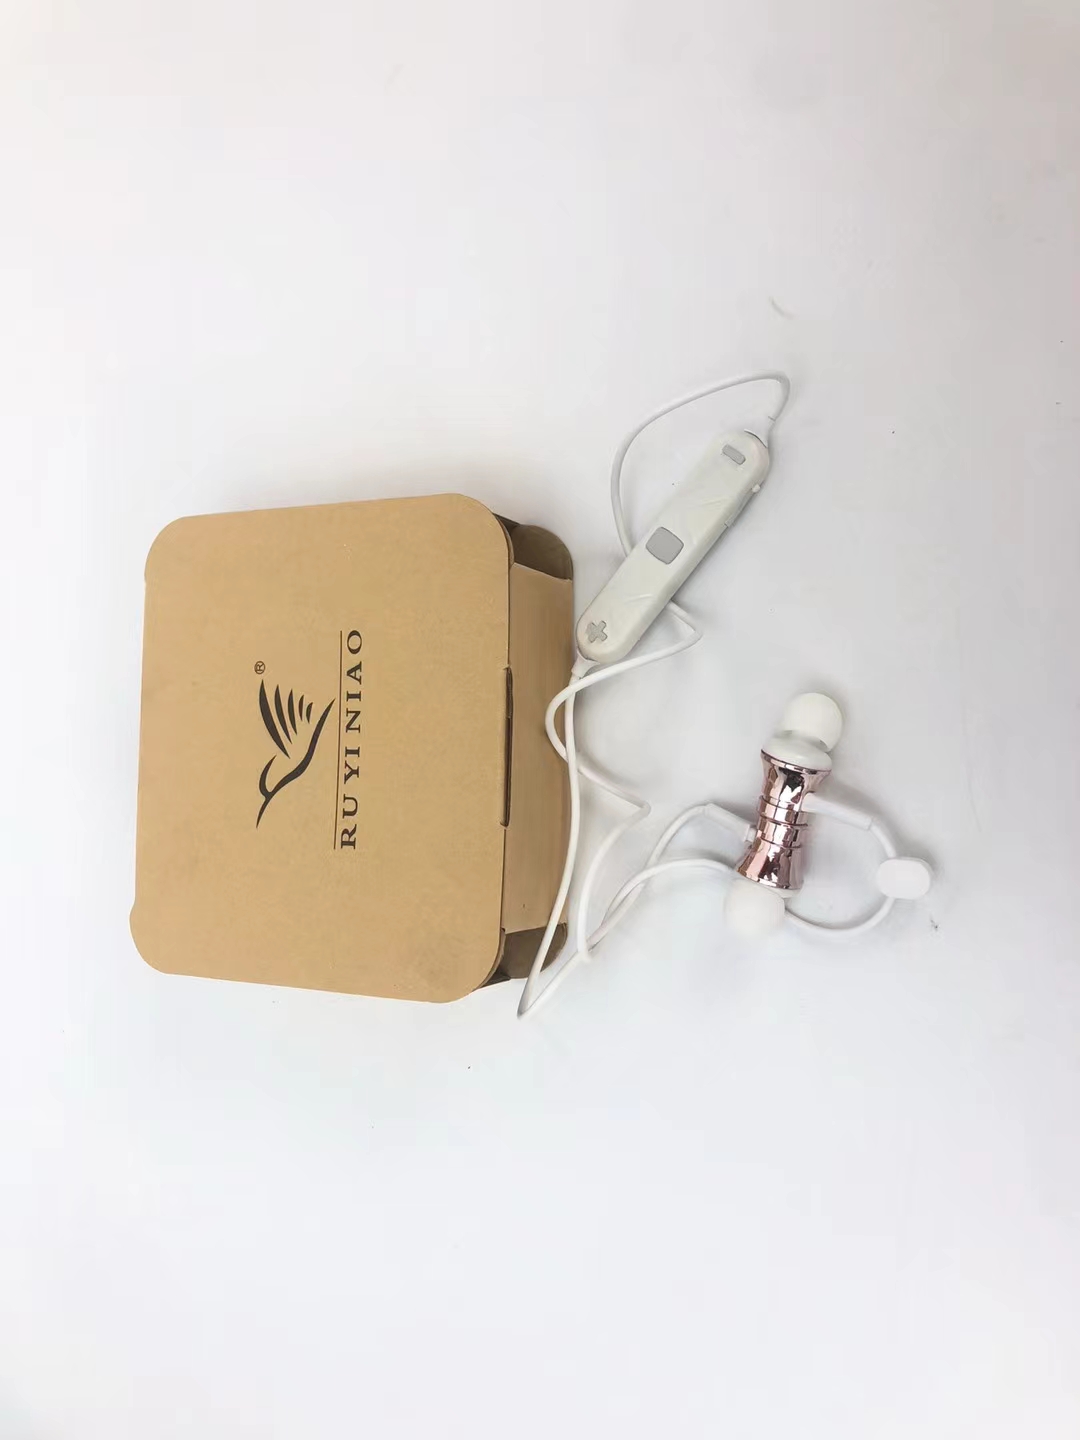 天津回收金属耳机 天津运动耳机回收公司